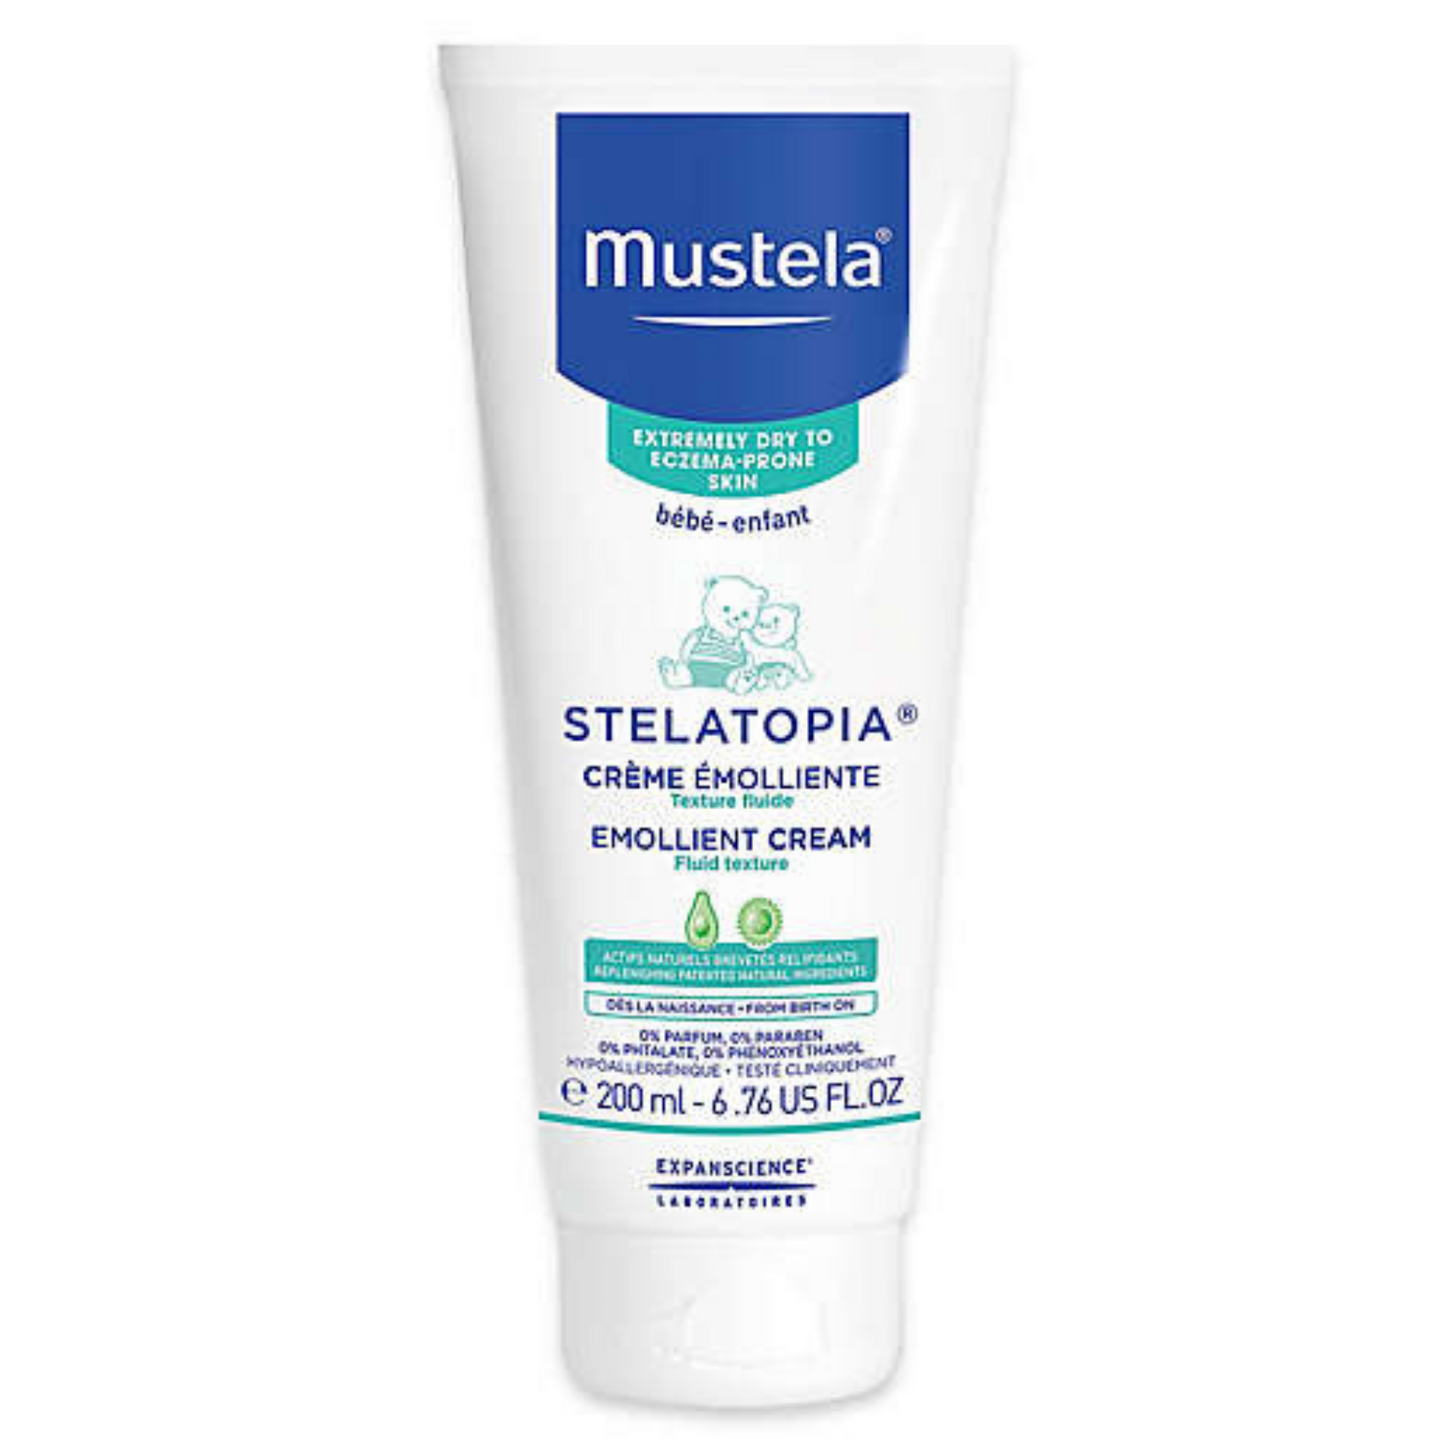 Primary Image of Stelatopia Emollient Cream